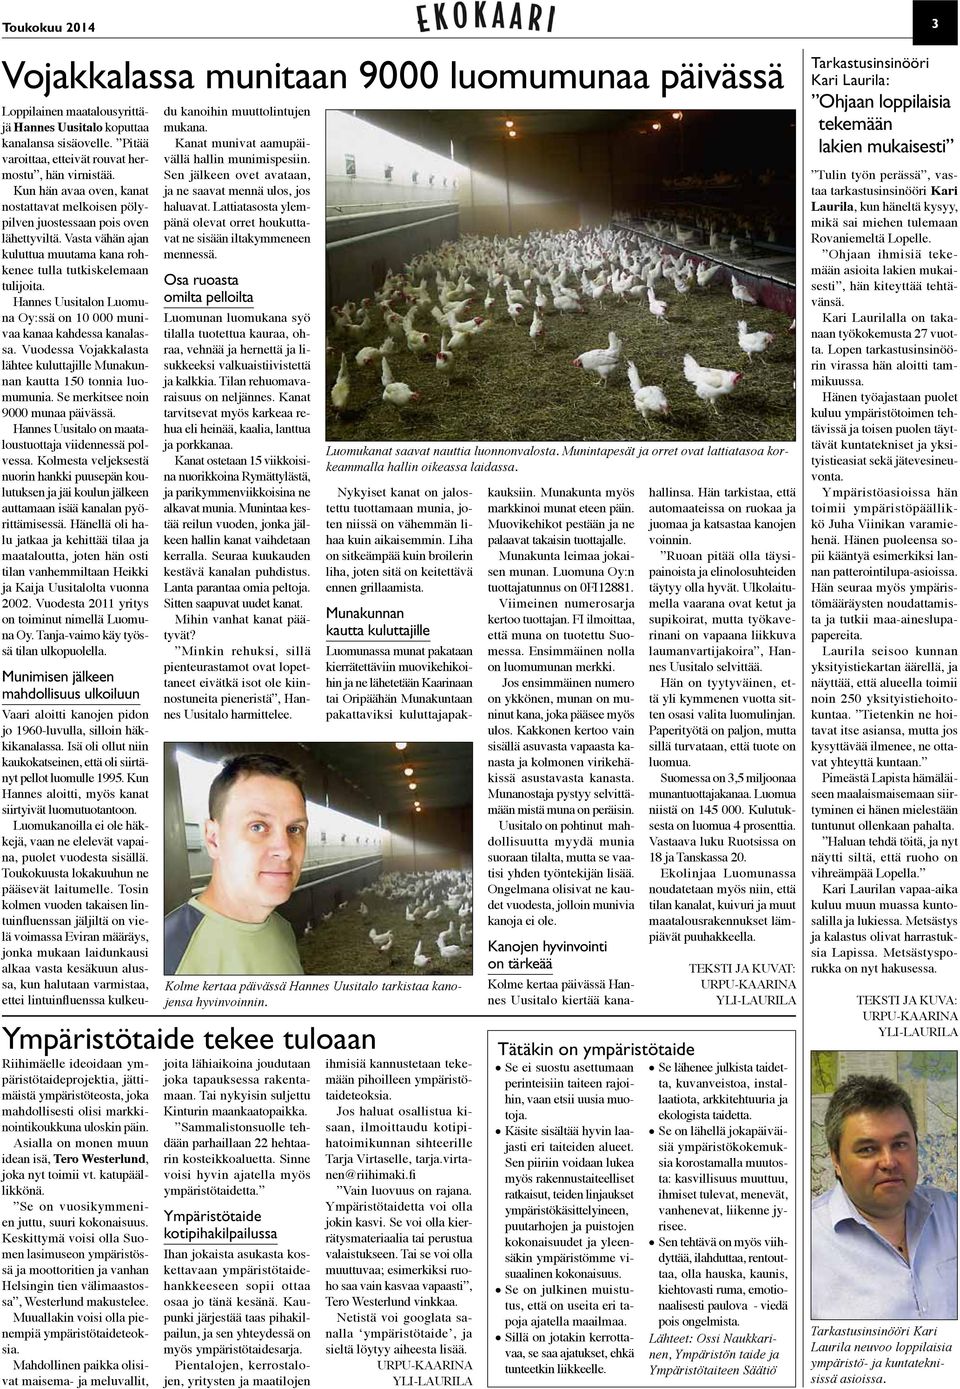 Hannes Uusitalon Luomuna Oy:ssä on 10 000 munivaa kanaa kahdessa kanalassa. Vuodessa Vojakkalasta lähtee kuluttajille Munakunnan kautta 150 tonnia luomumunia. Se merkitsee noin 9000 munaa päivässä.